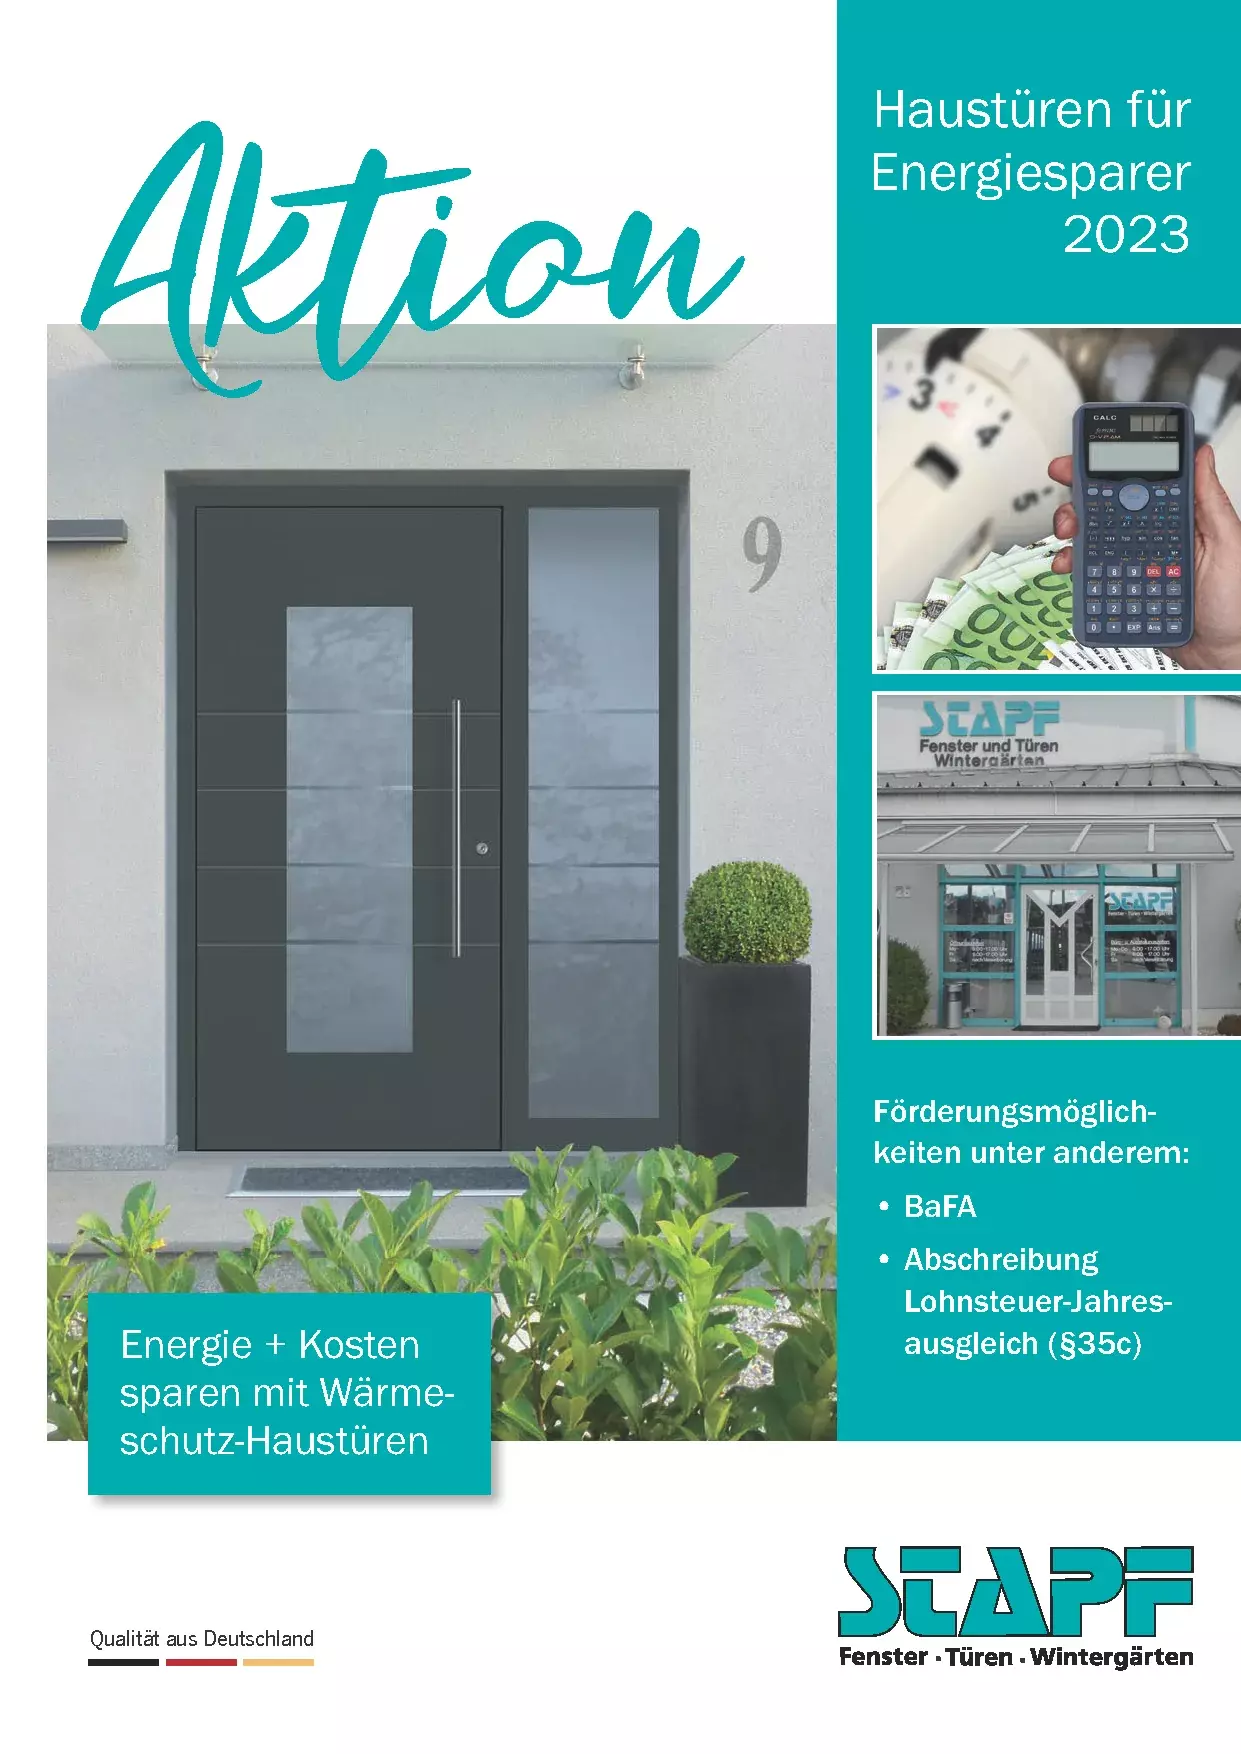 Haustüren für Energiesparer 2023 bei Stapf Fenster und Türen GmbH in Bamberg Hallstadt